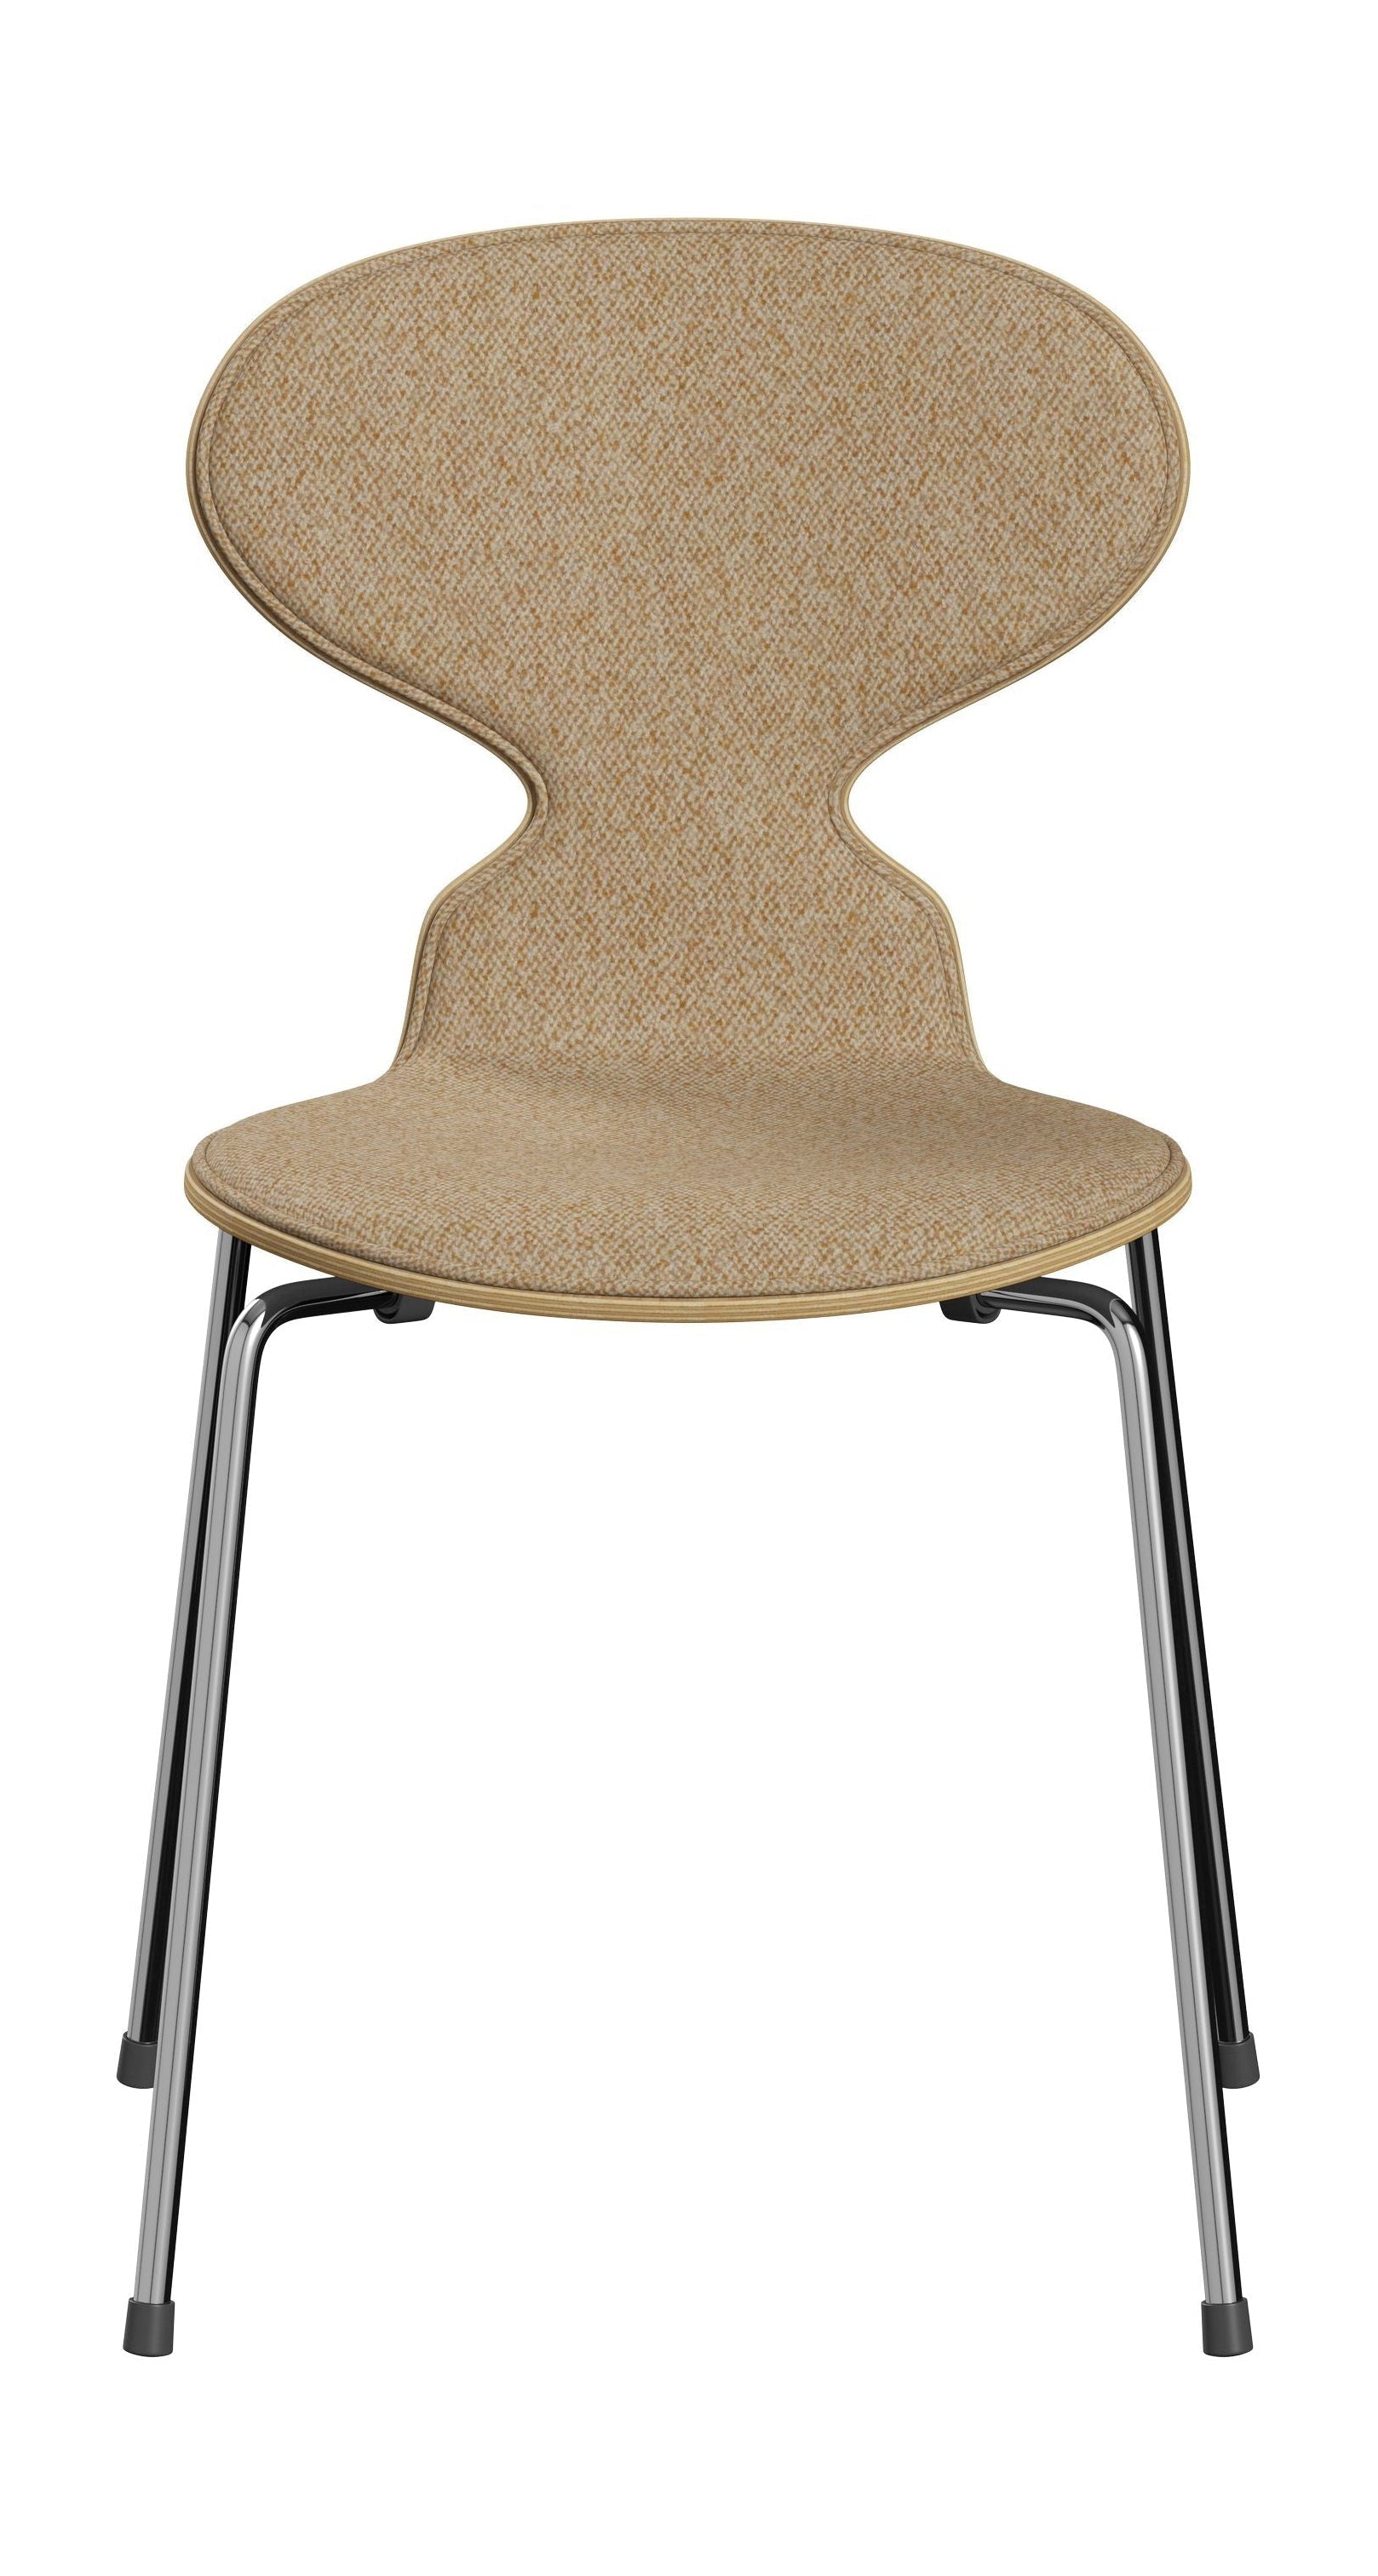 Fritz Hansen 3101 Ant stol foran polstret, skal: klar lakeret finer Eiche, polstring: vanir tekstil beige sennep, base: stål/krom